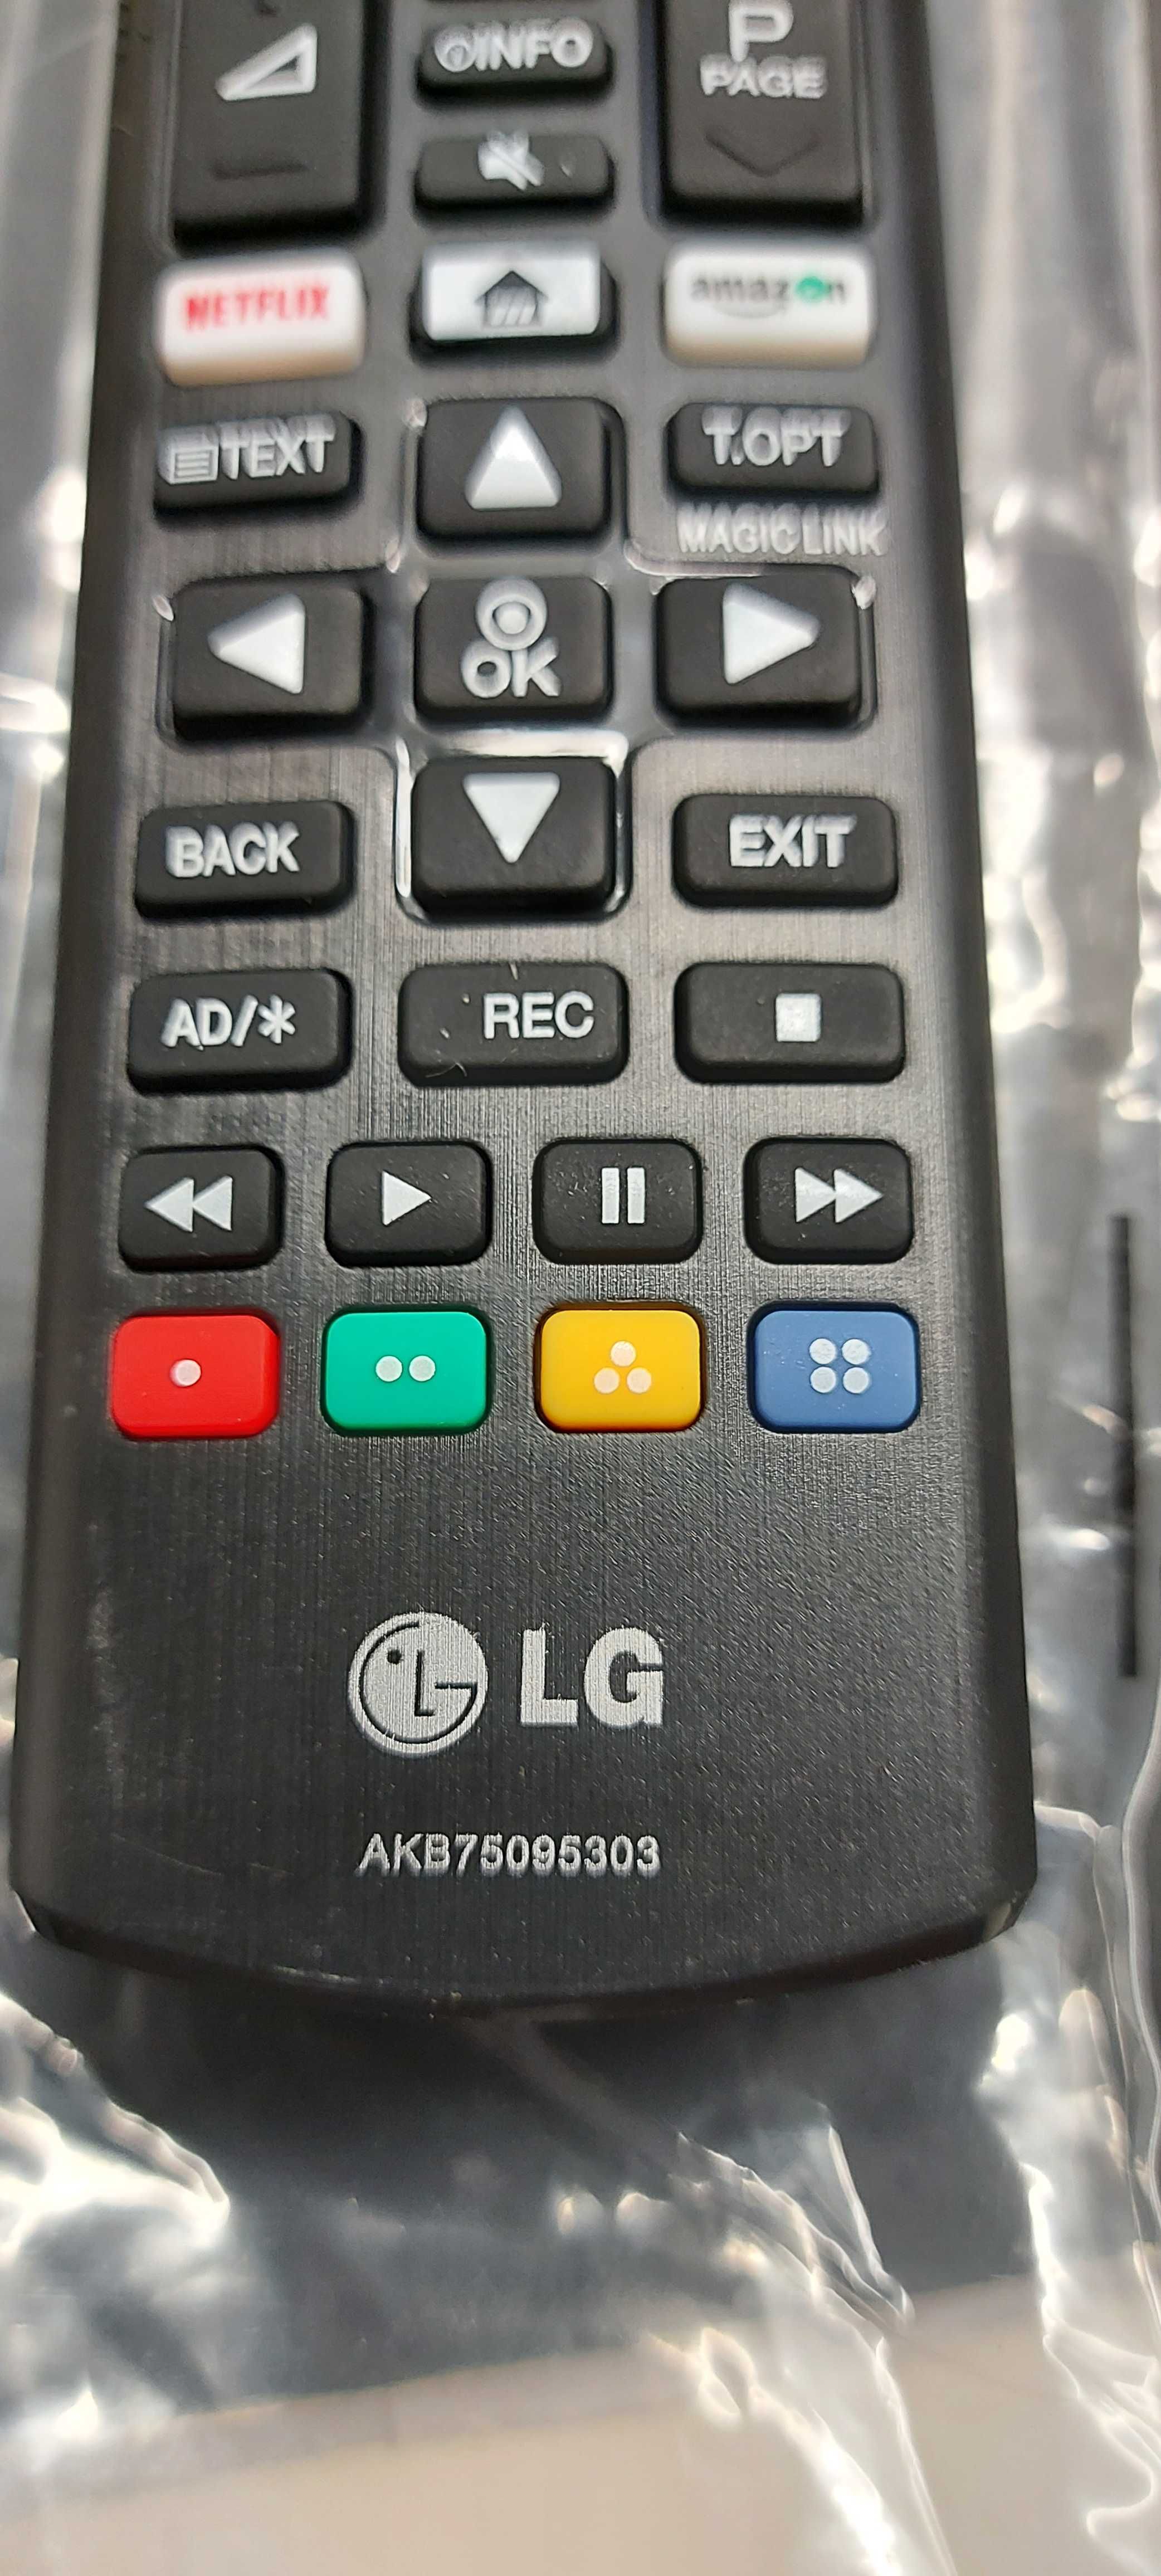 LG comando novo para tv